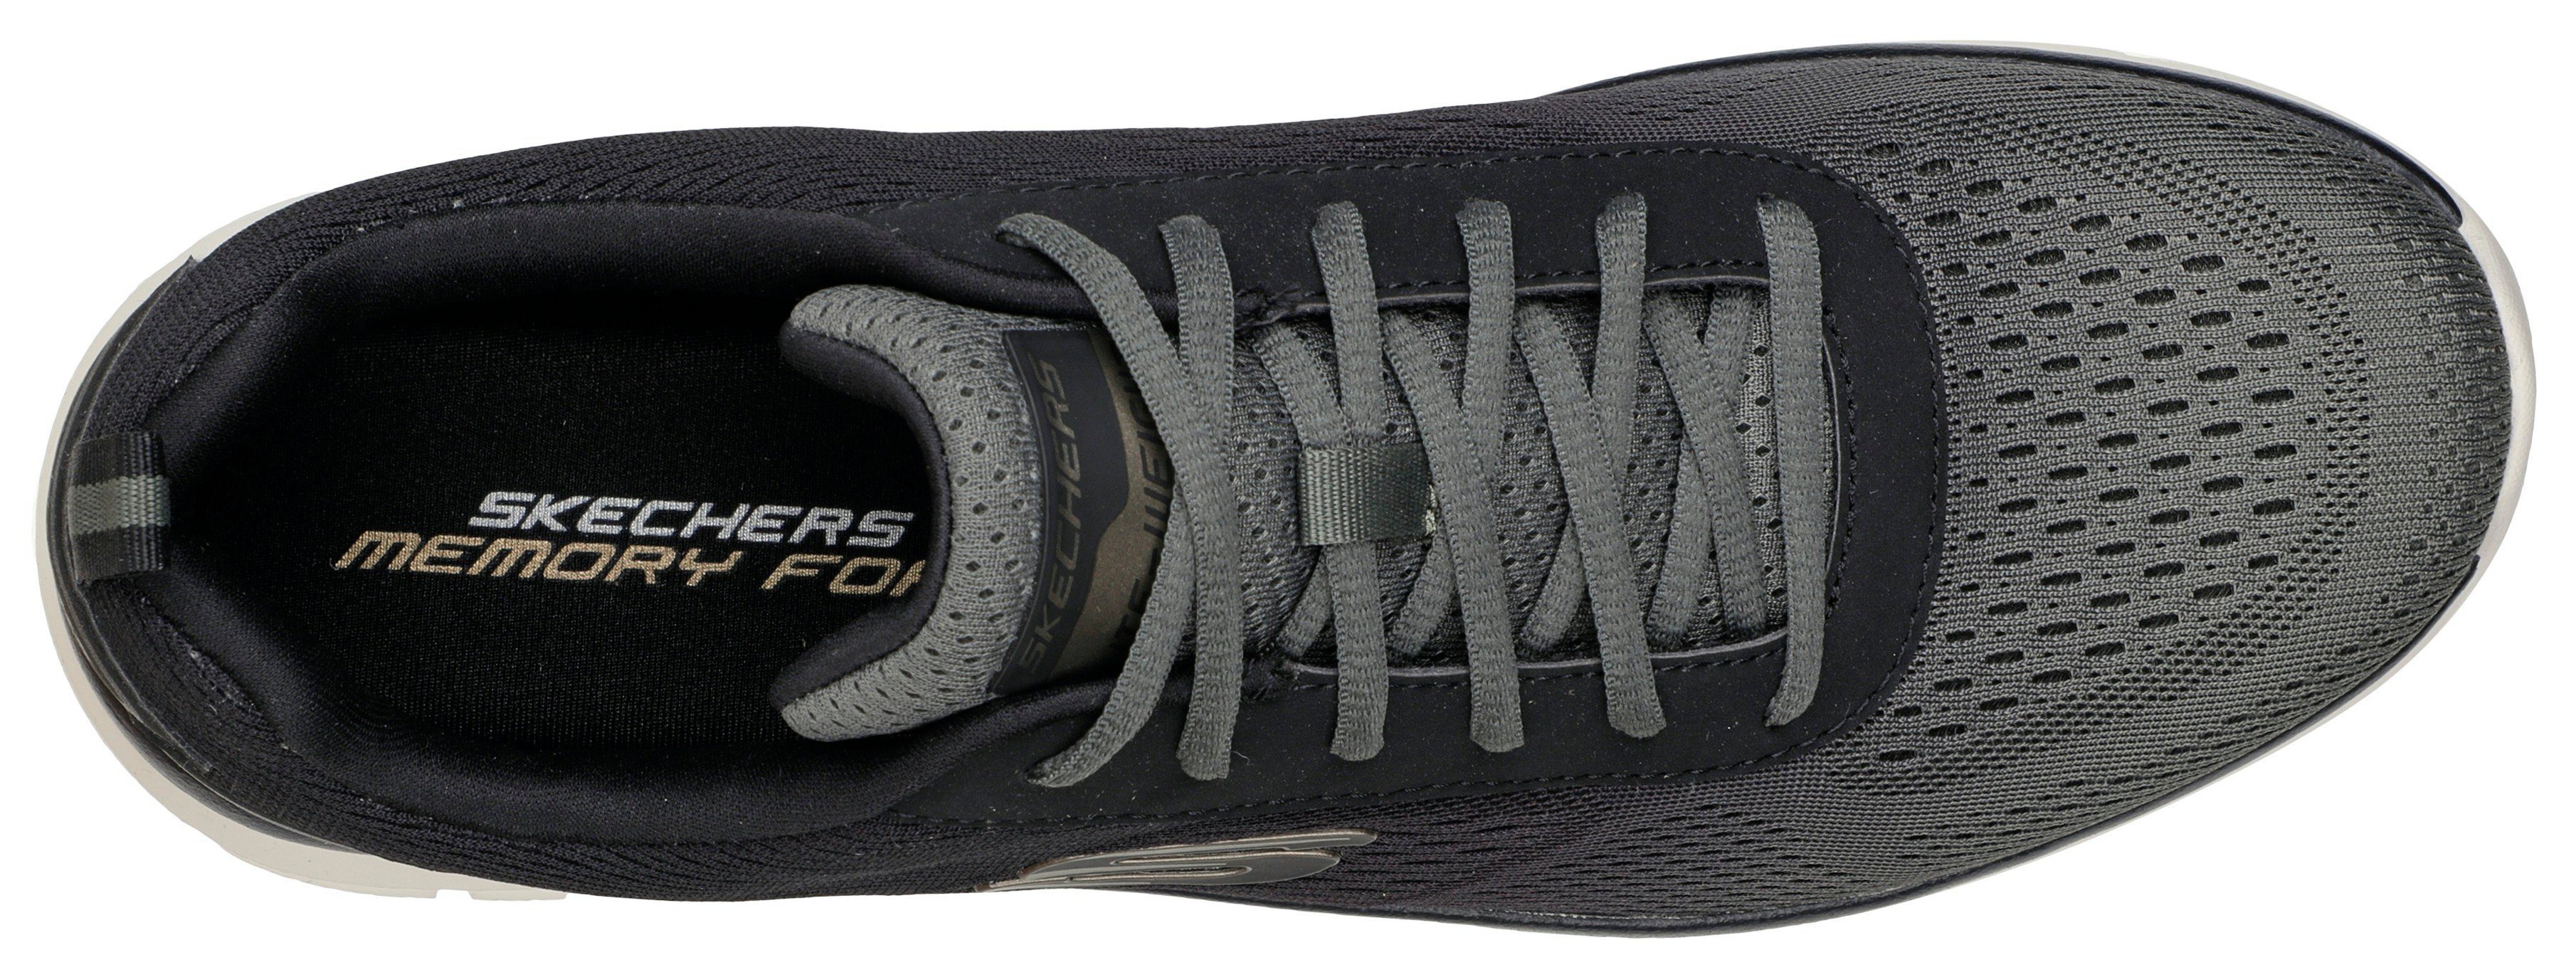 Kontrast-Details Skechers Sneaker mit TRACK olivgrün-schwarz dezenten